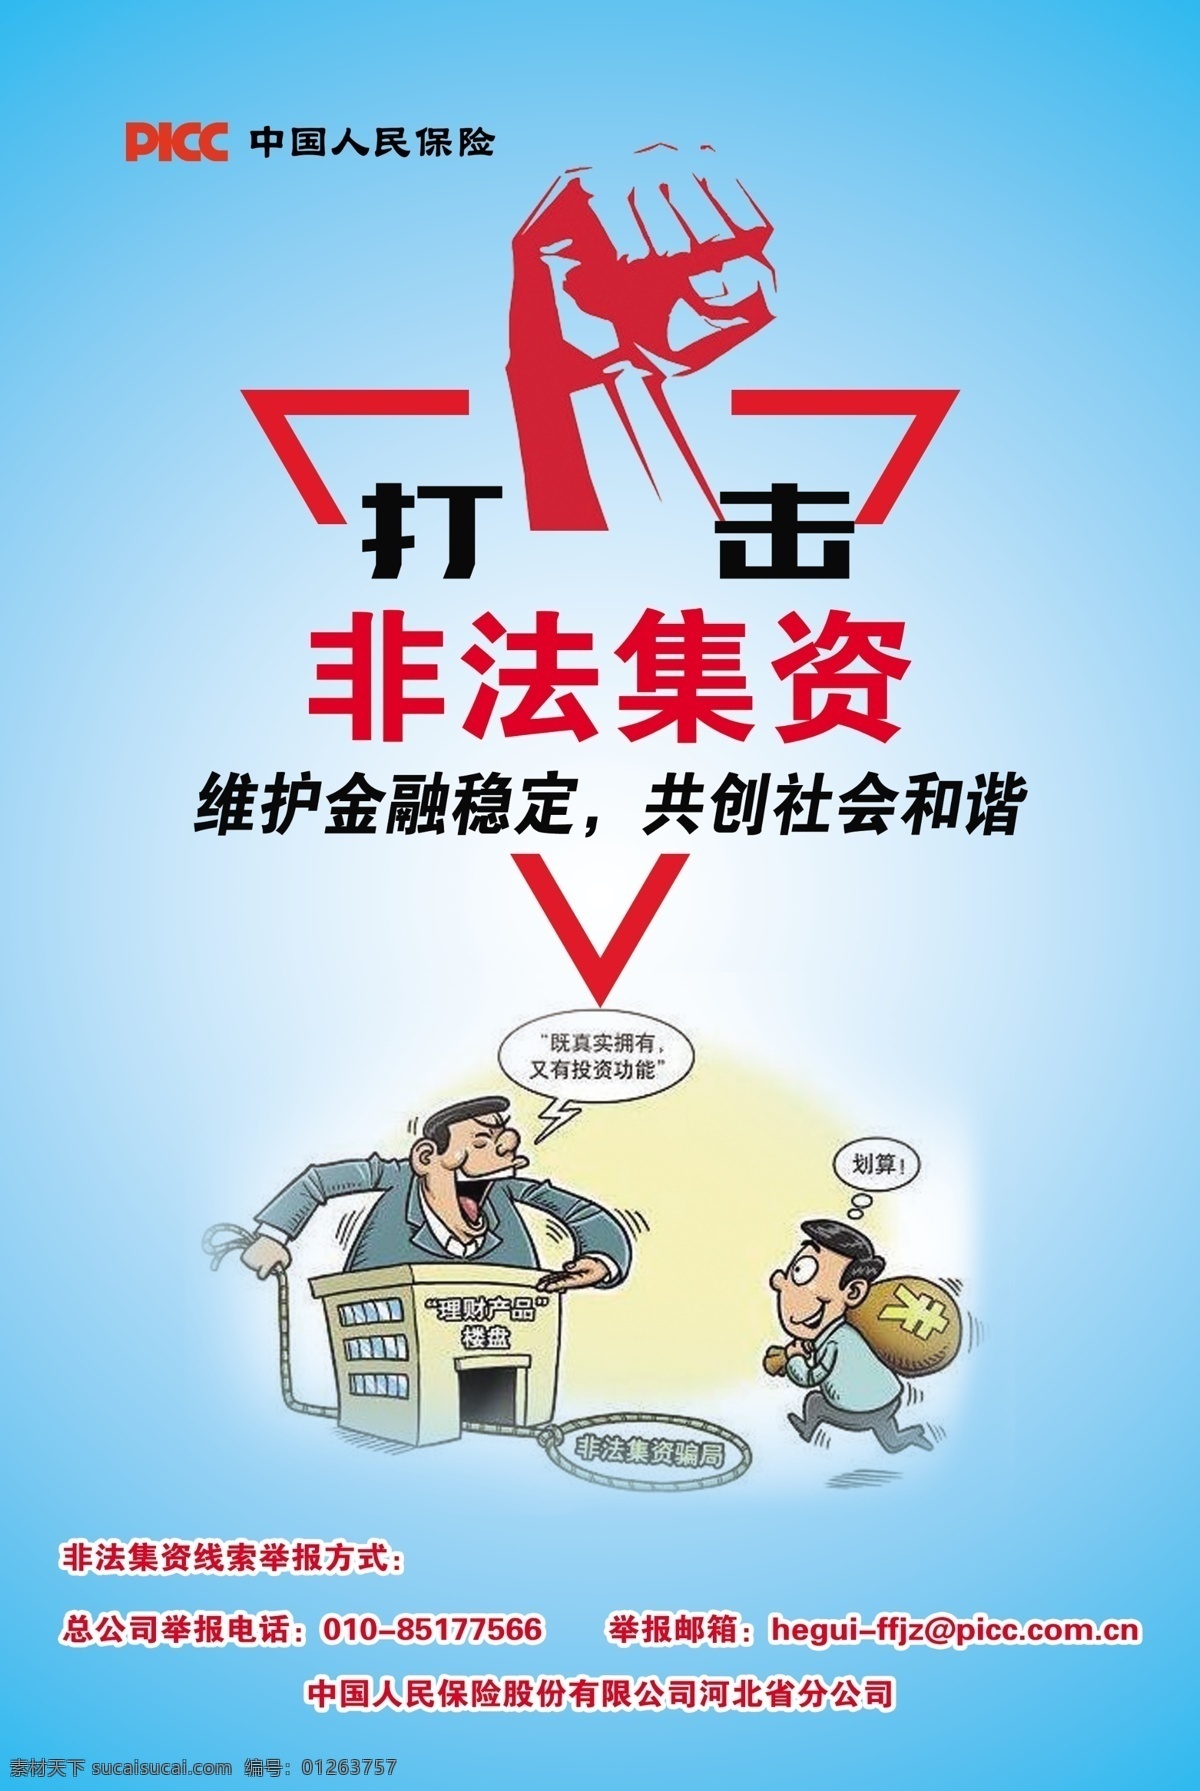 中国人保 中国人民保险 保险 打击 非法集资 维护 金融 稳定 共创 和谐 社会